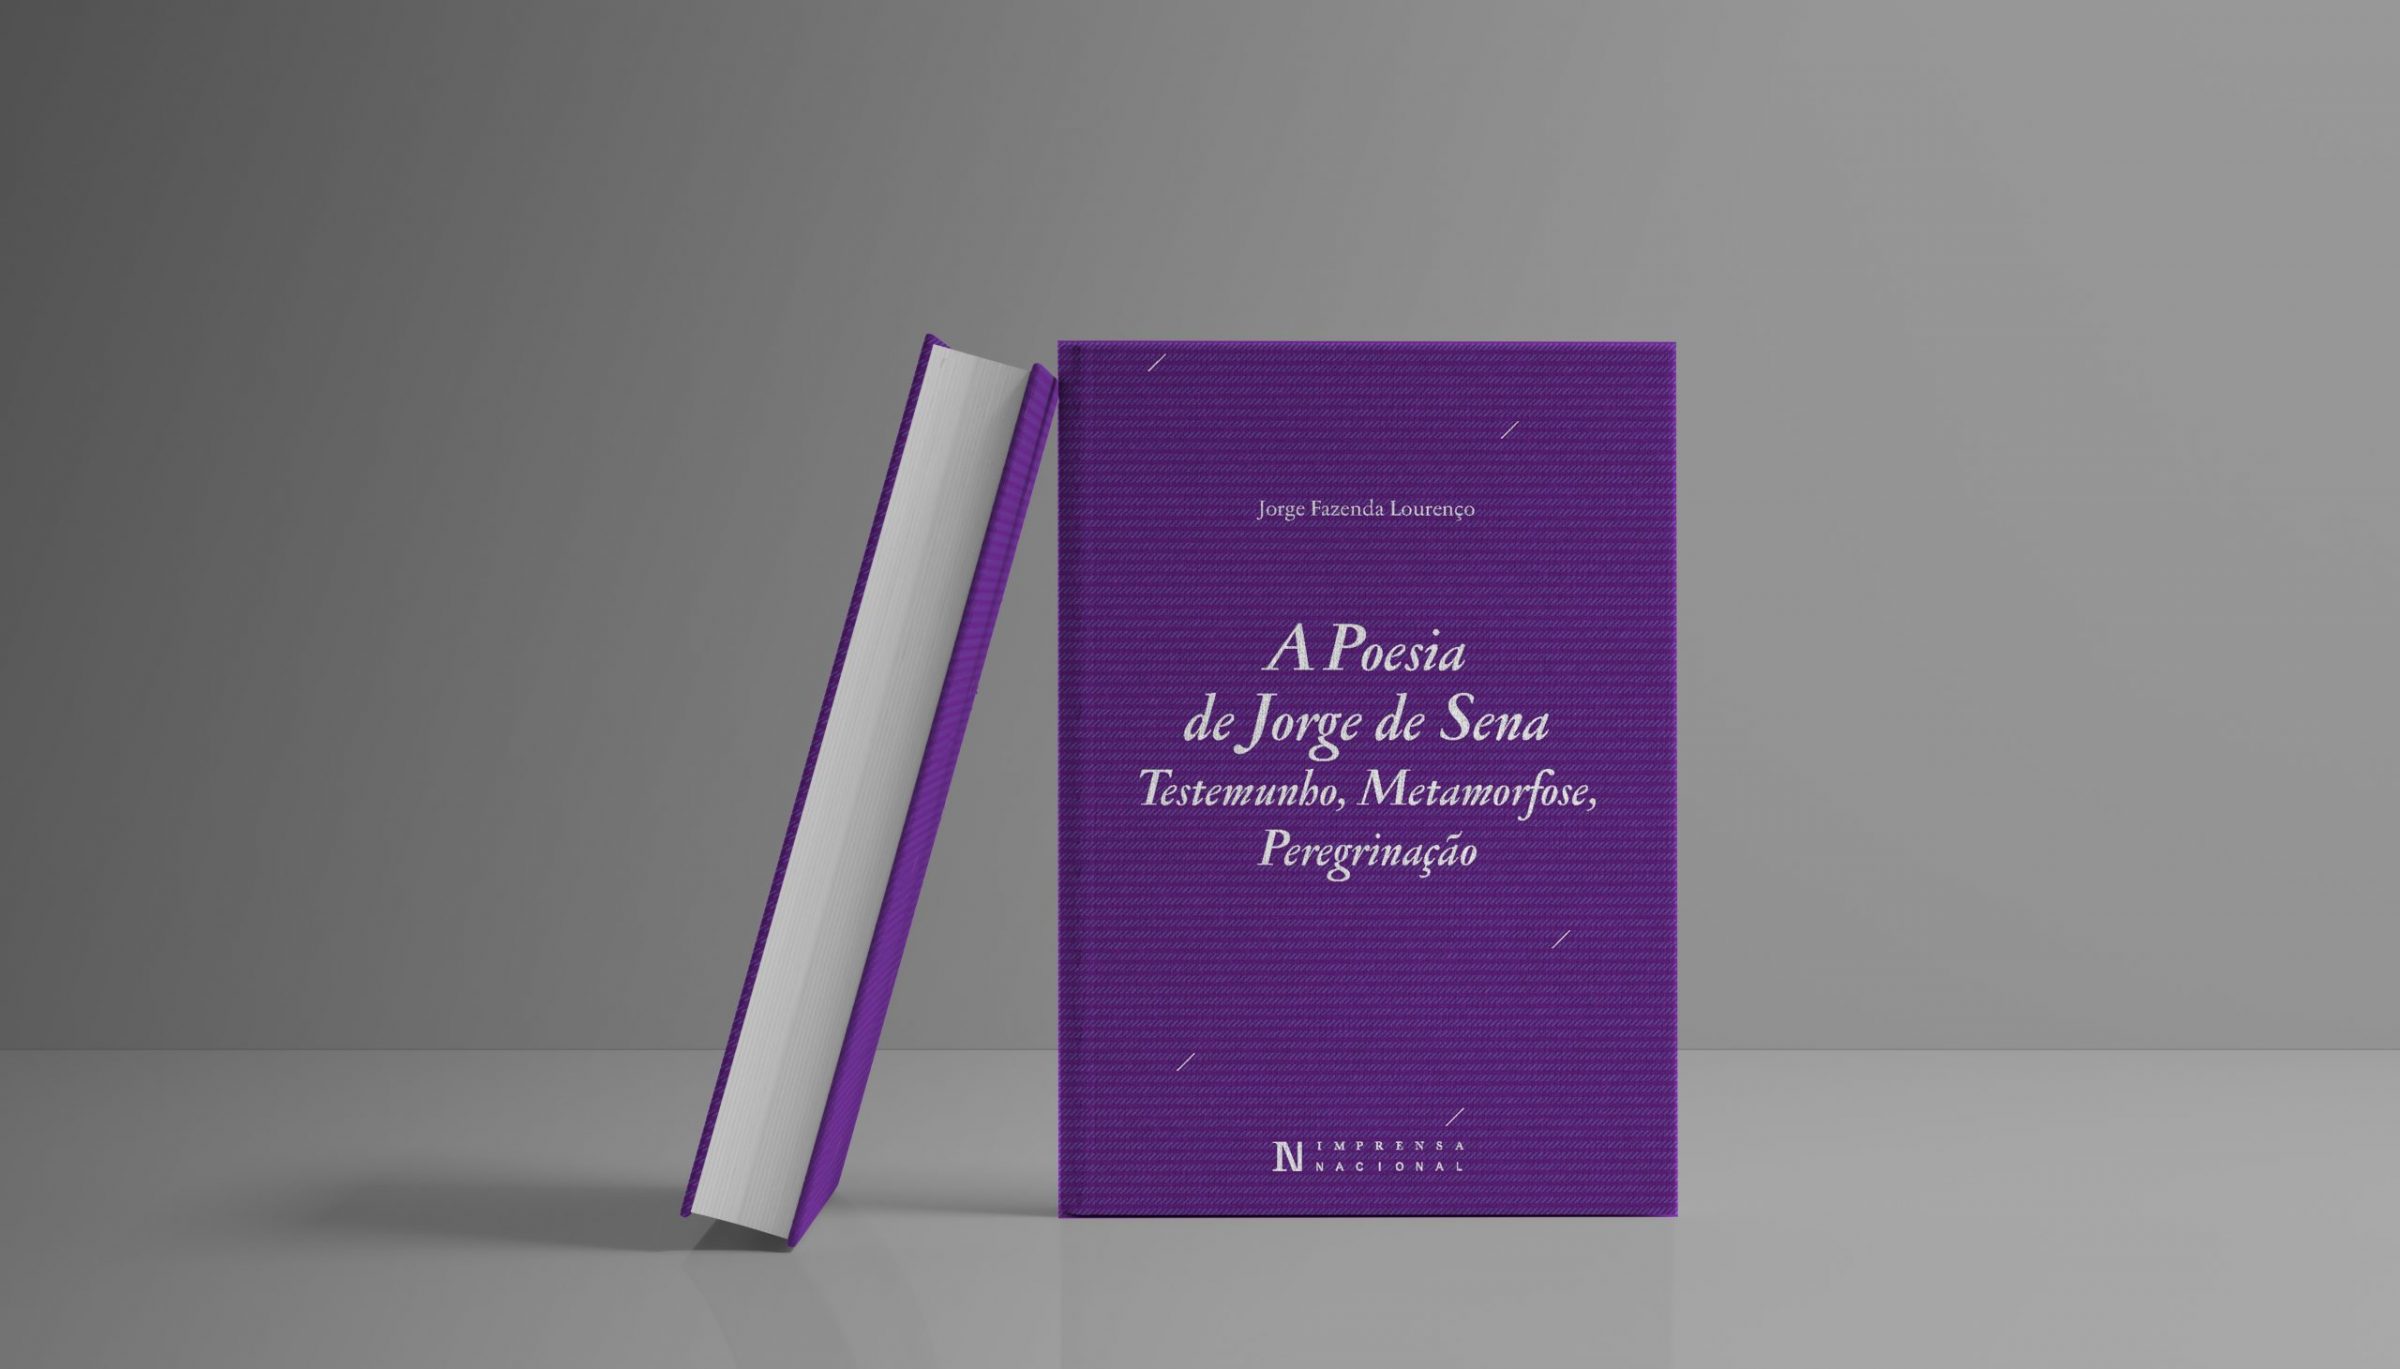 A Poesia de Jorge de Sena. Testemunho, Metamorfose, Peregrinação, de Jorge Fazenda Lourenço